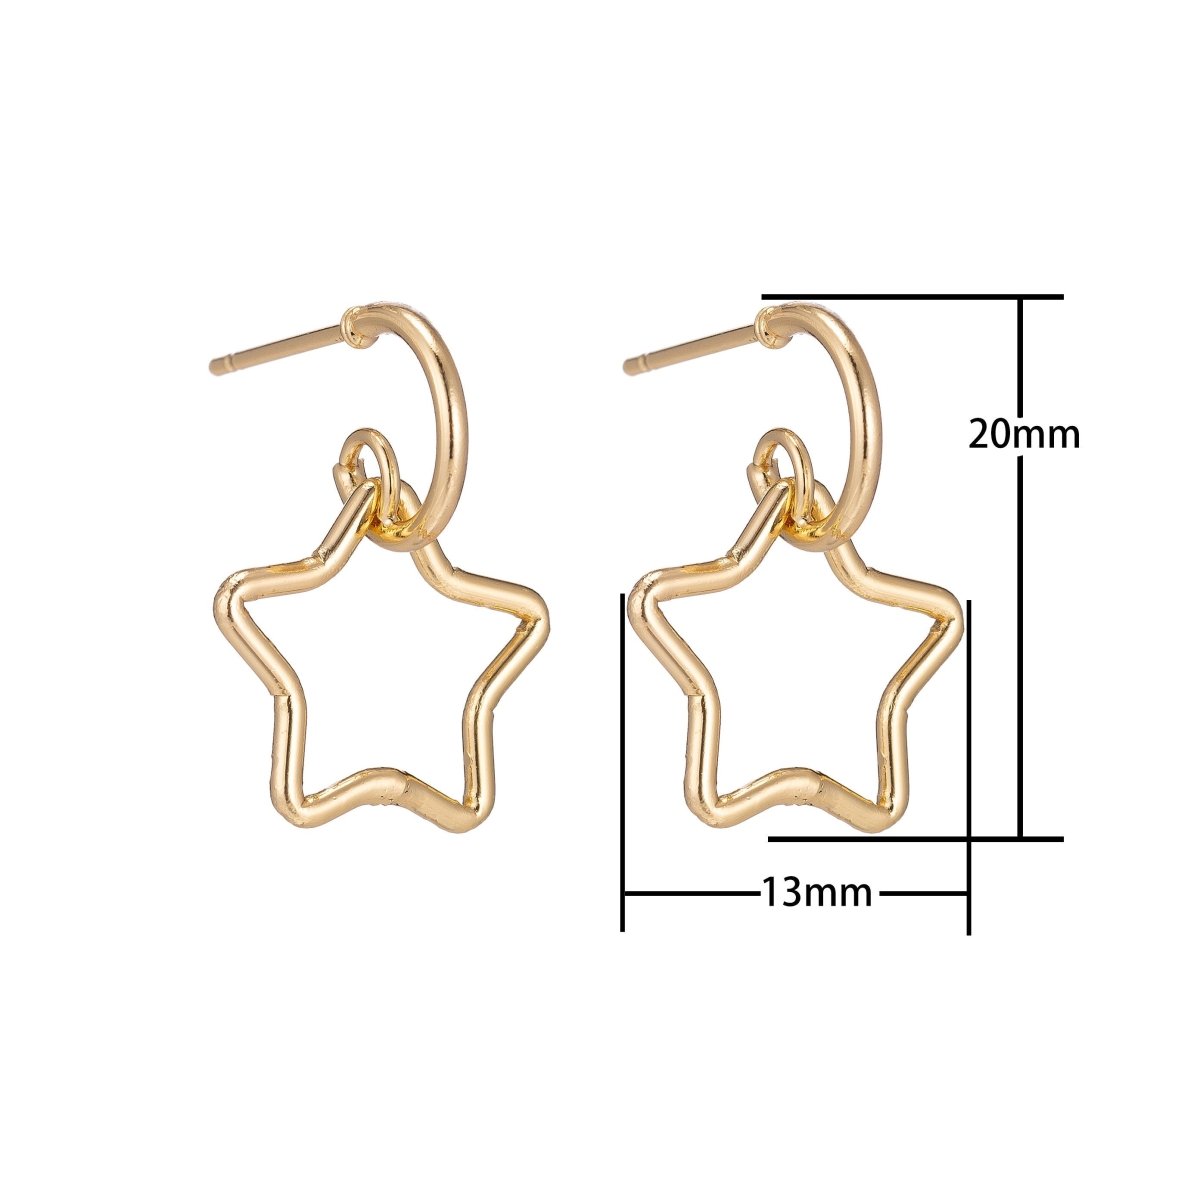 Dainty 18k Gold Filled Star Earrings, Celestial Earrings, Geometric Huggie Earring Making Supply Findings for Jewelry Making Supplies K-027 - DLUXCA